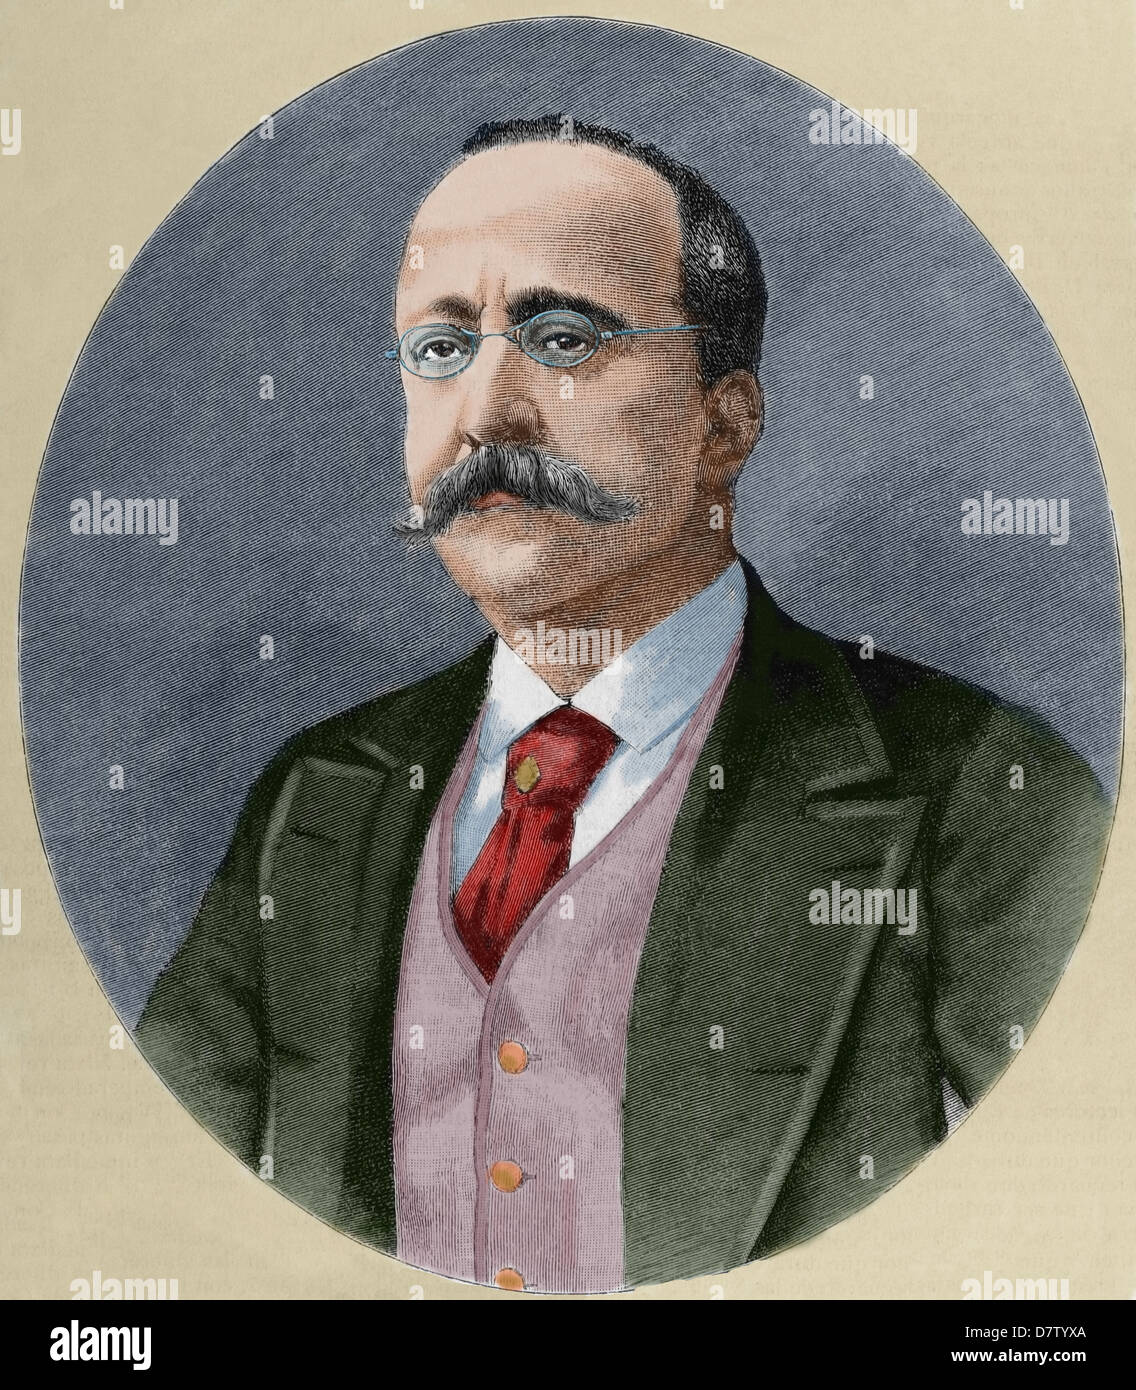 Enrique Hernández (nacido en 1828). El periodista español y editor de El Imparcial. Grabado. Coloreada. Foto de stock